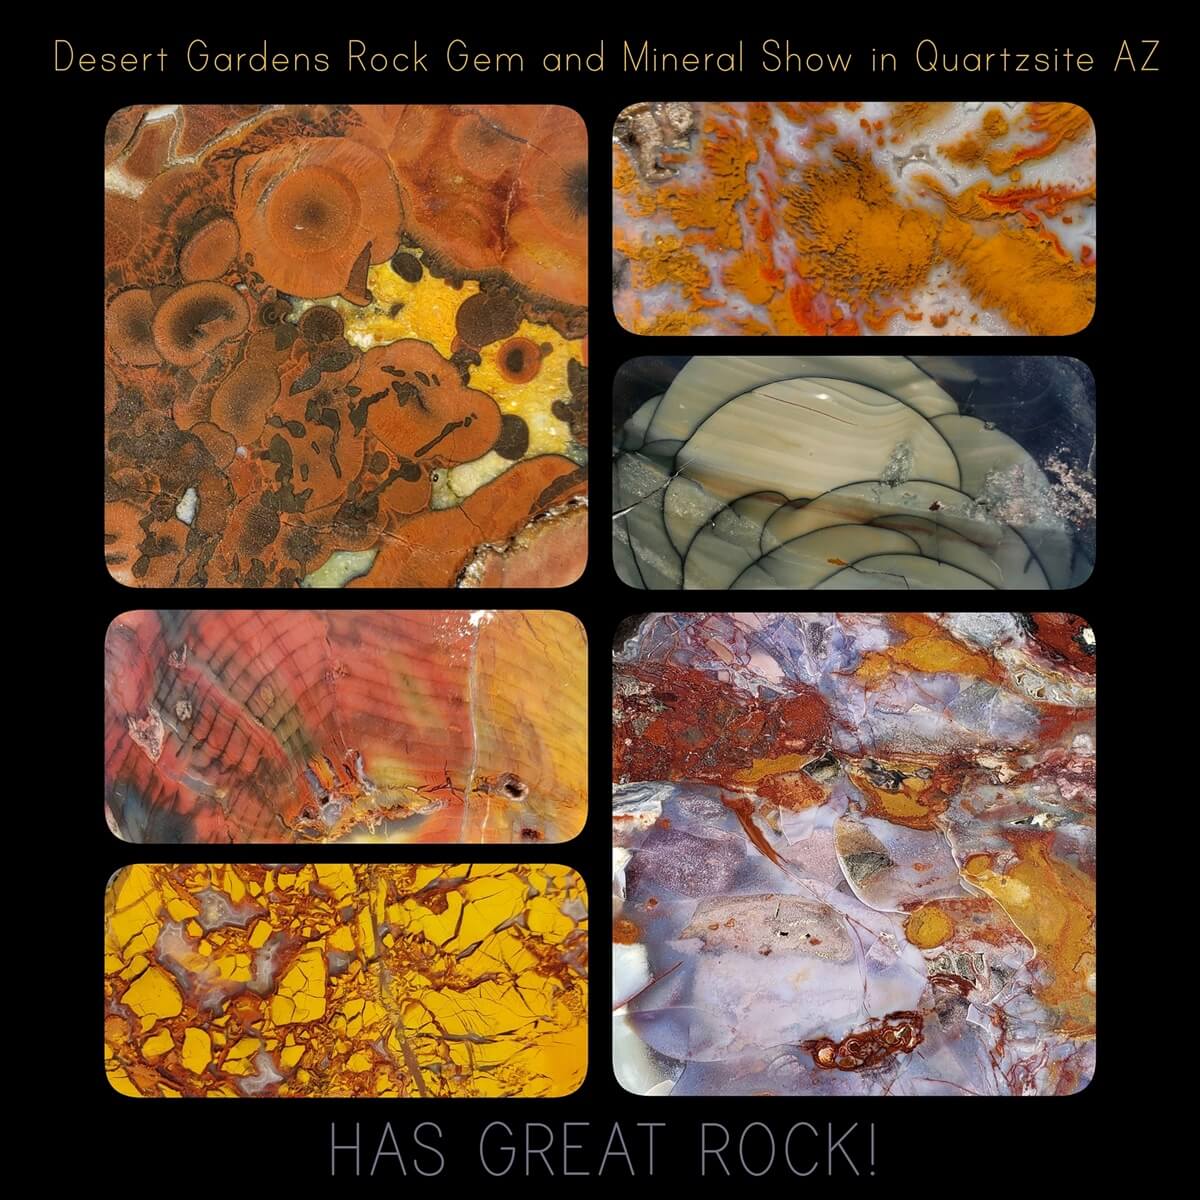 Desert Gardens International Rock, Gem & Mineral Show